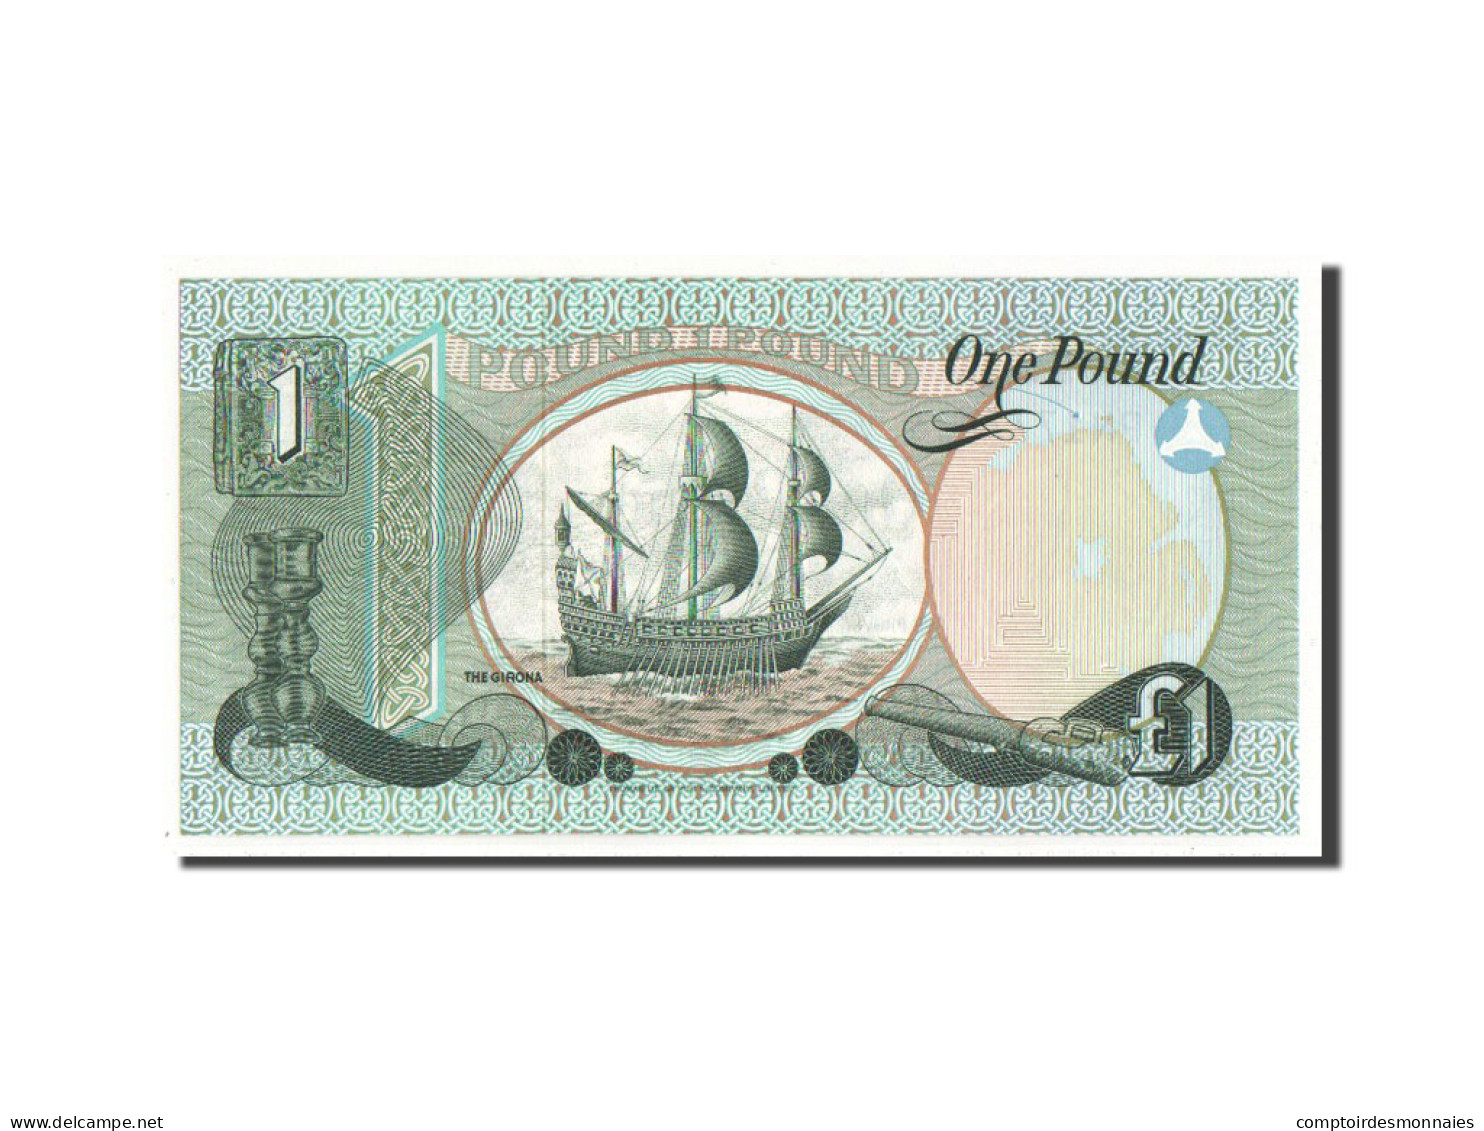 Billet, Northern Ireland, 1 Pound, 1979, NEUF - Irland